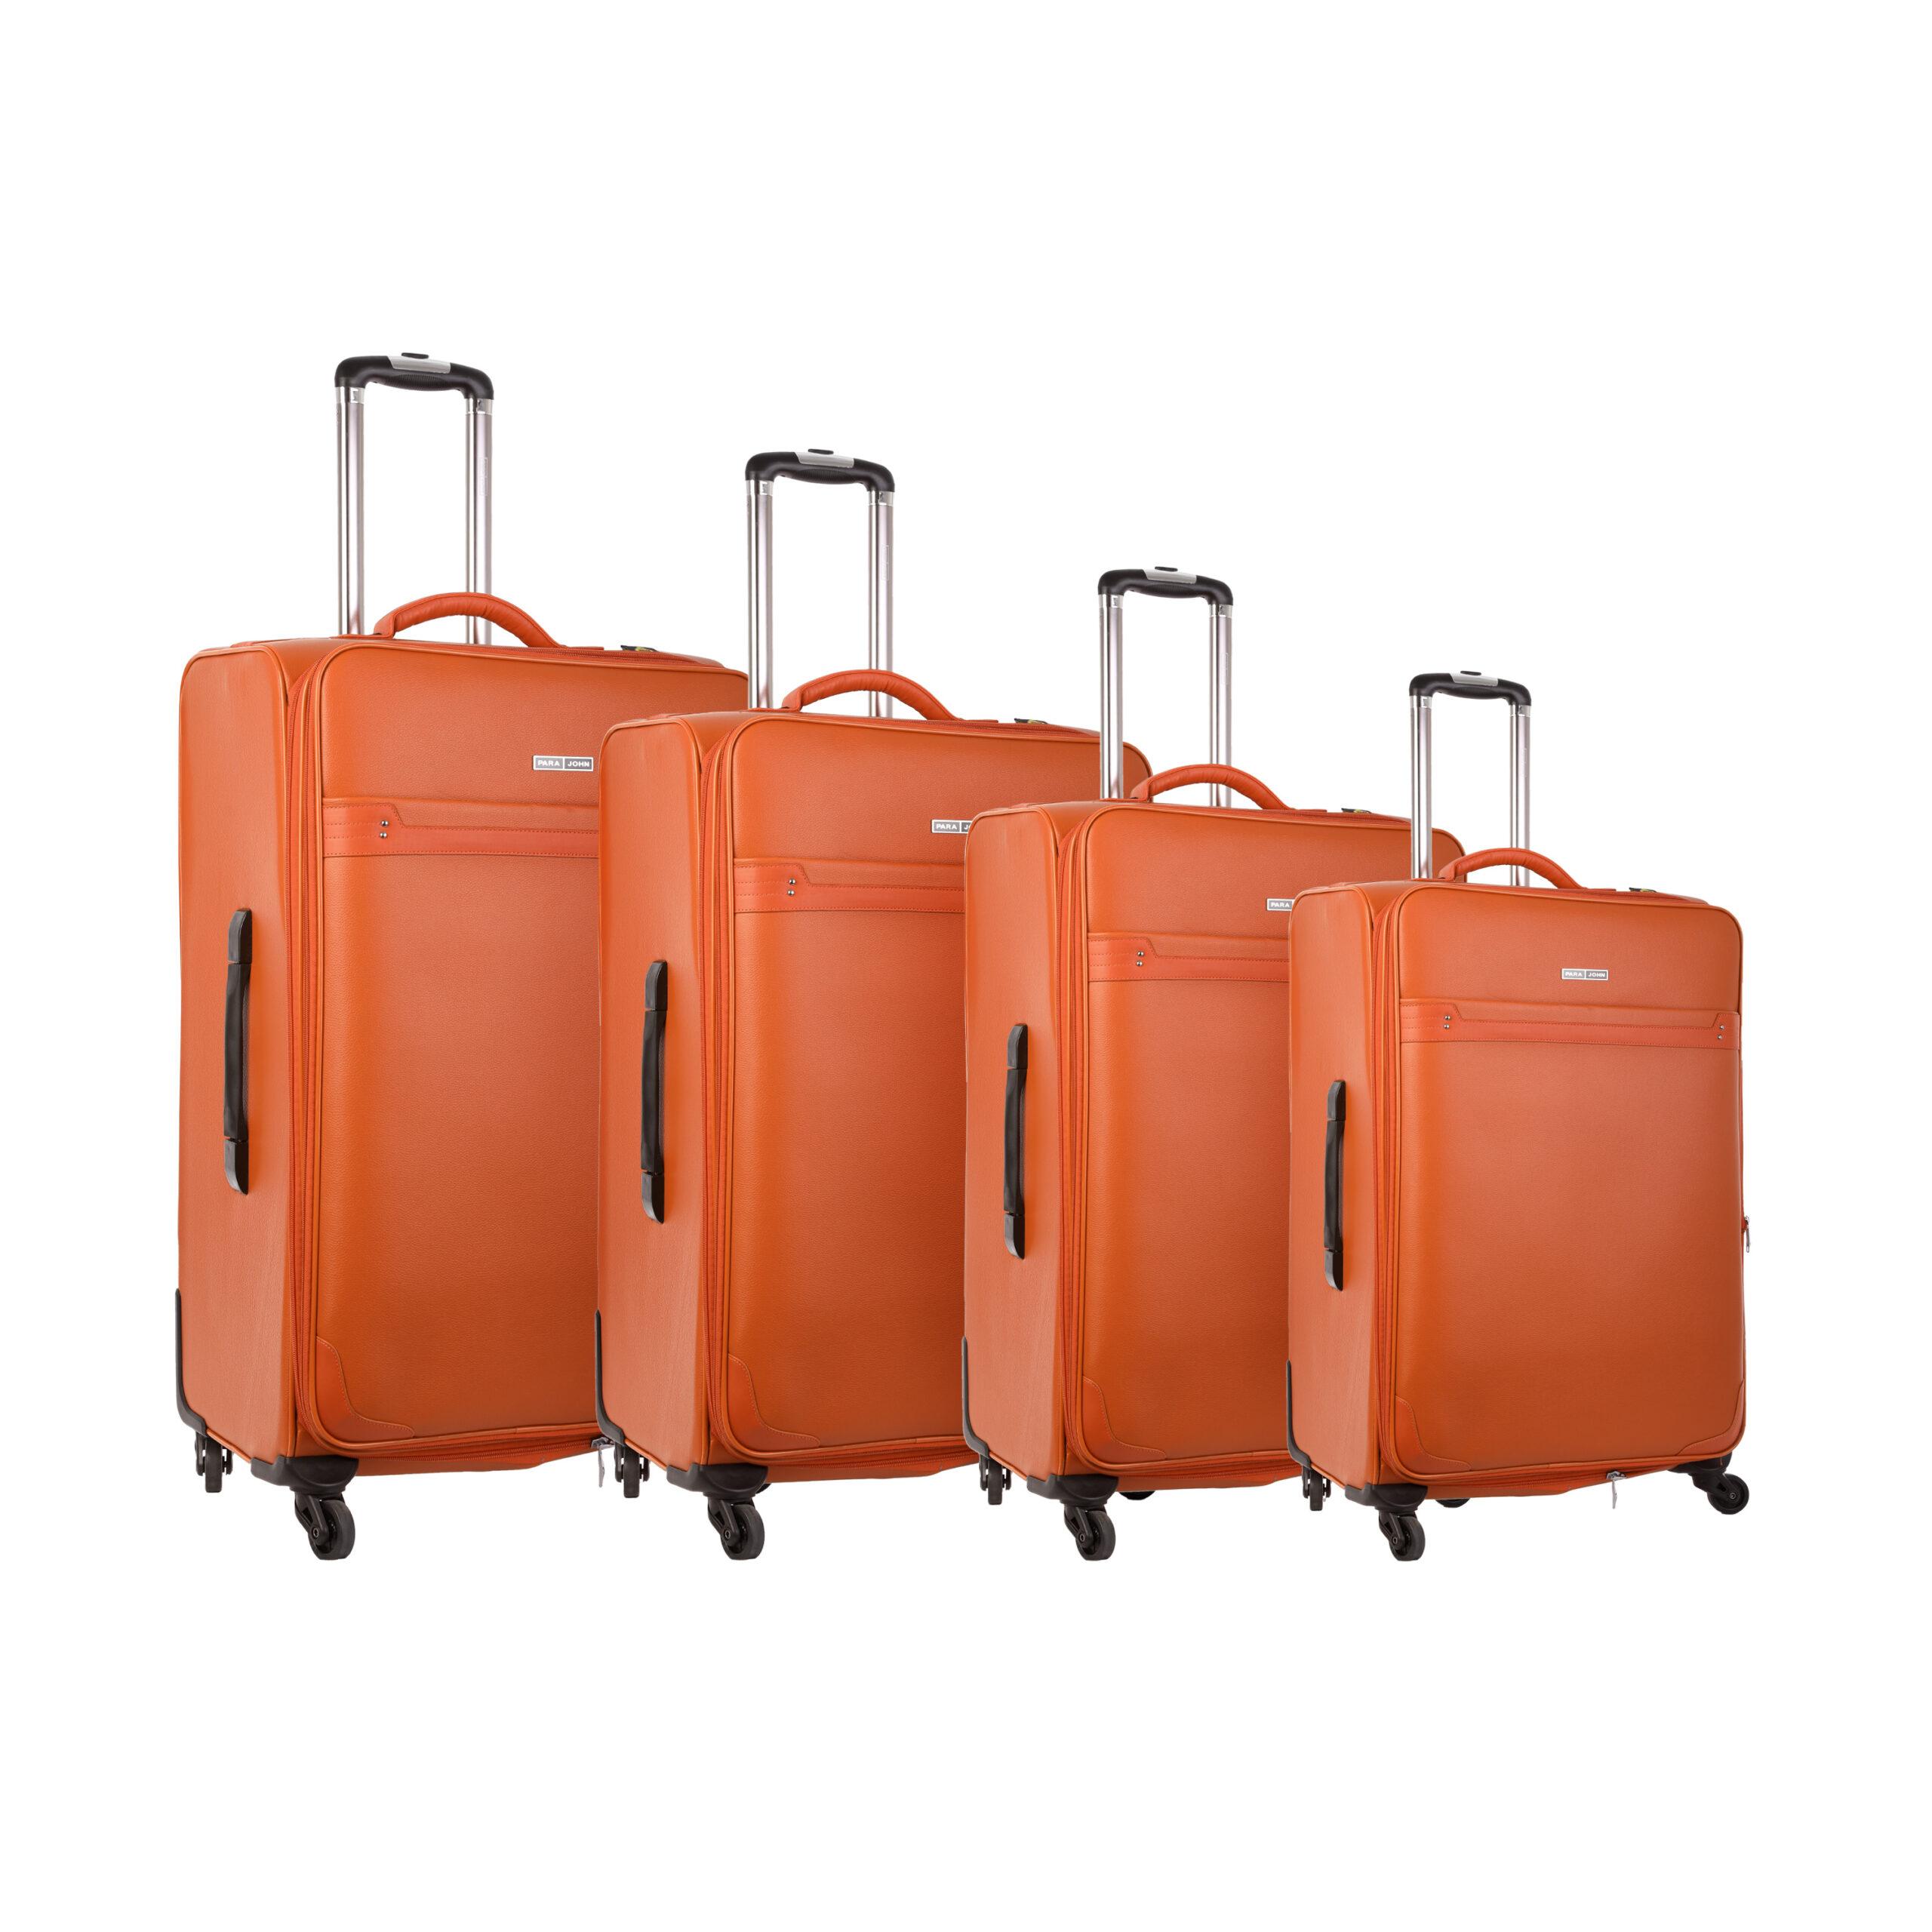 طقم حقائب سفر دوارة 4 حقائب (16 ، 20 ، 24 ، 28) بوصة ABS برتقالي PARA JOHN - 4 Pcs Travel Luggage Suitcase Trolley Set - PVC Leather Cabin Trolley Bag – Cabin size suitcase for Business Travellers - (16 ، 20 ، 24 ، 28) inch